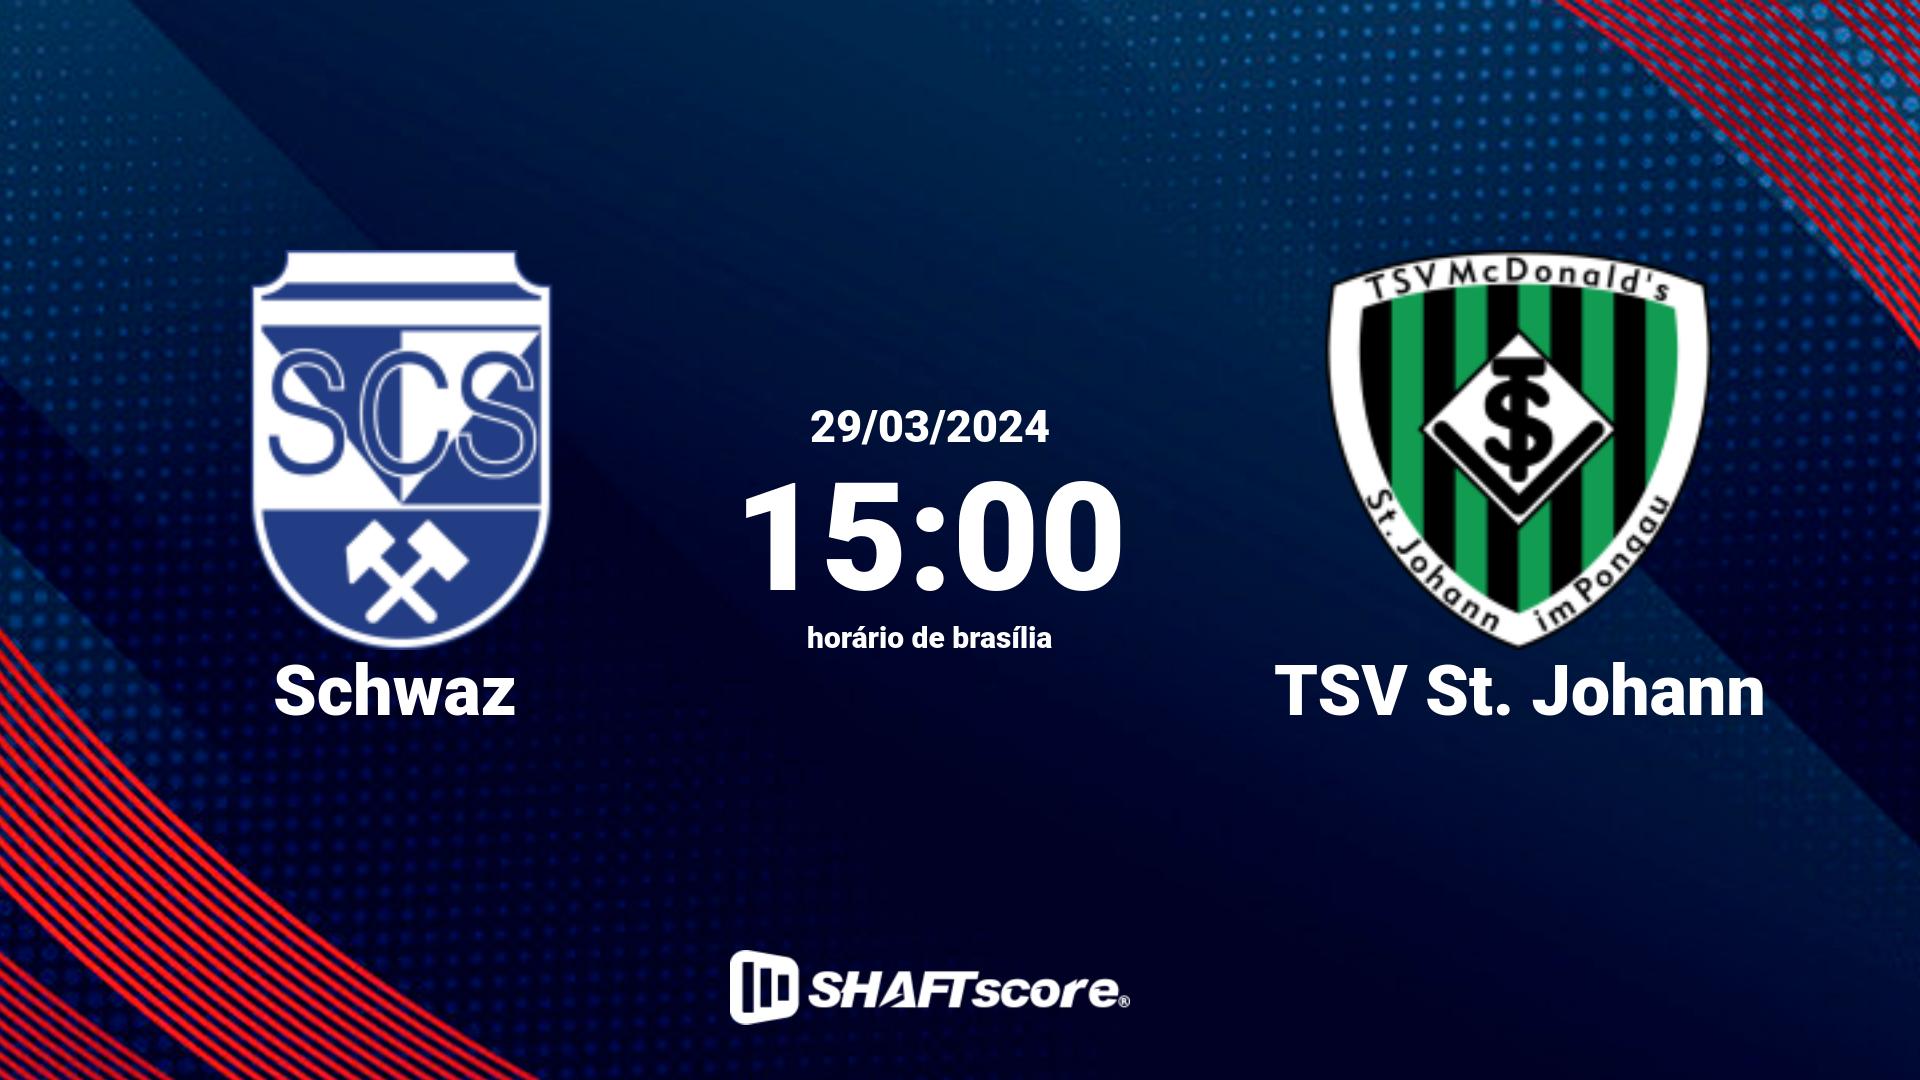 Estatísticas do jogo Schwaz vs TSV St. Johann 29.03 15:00